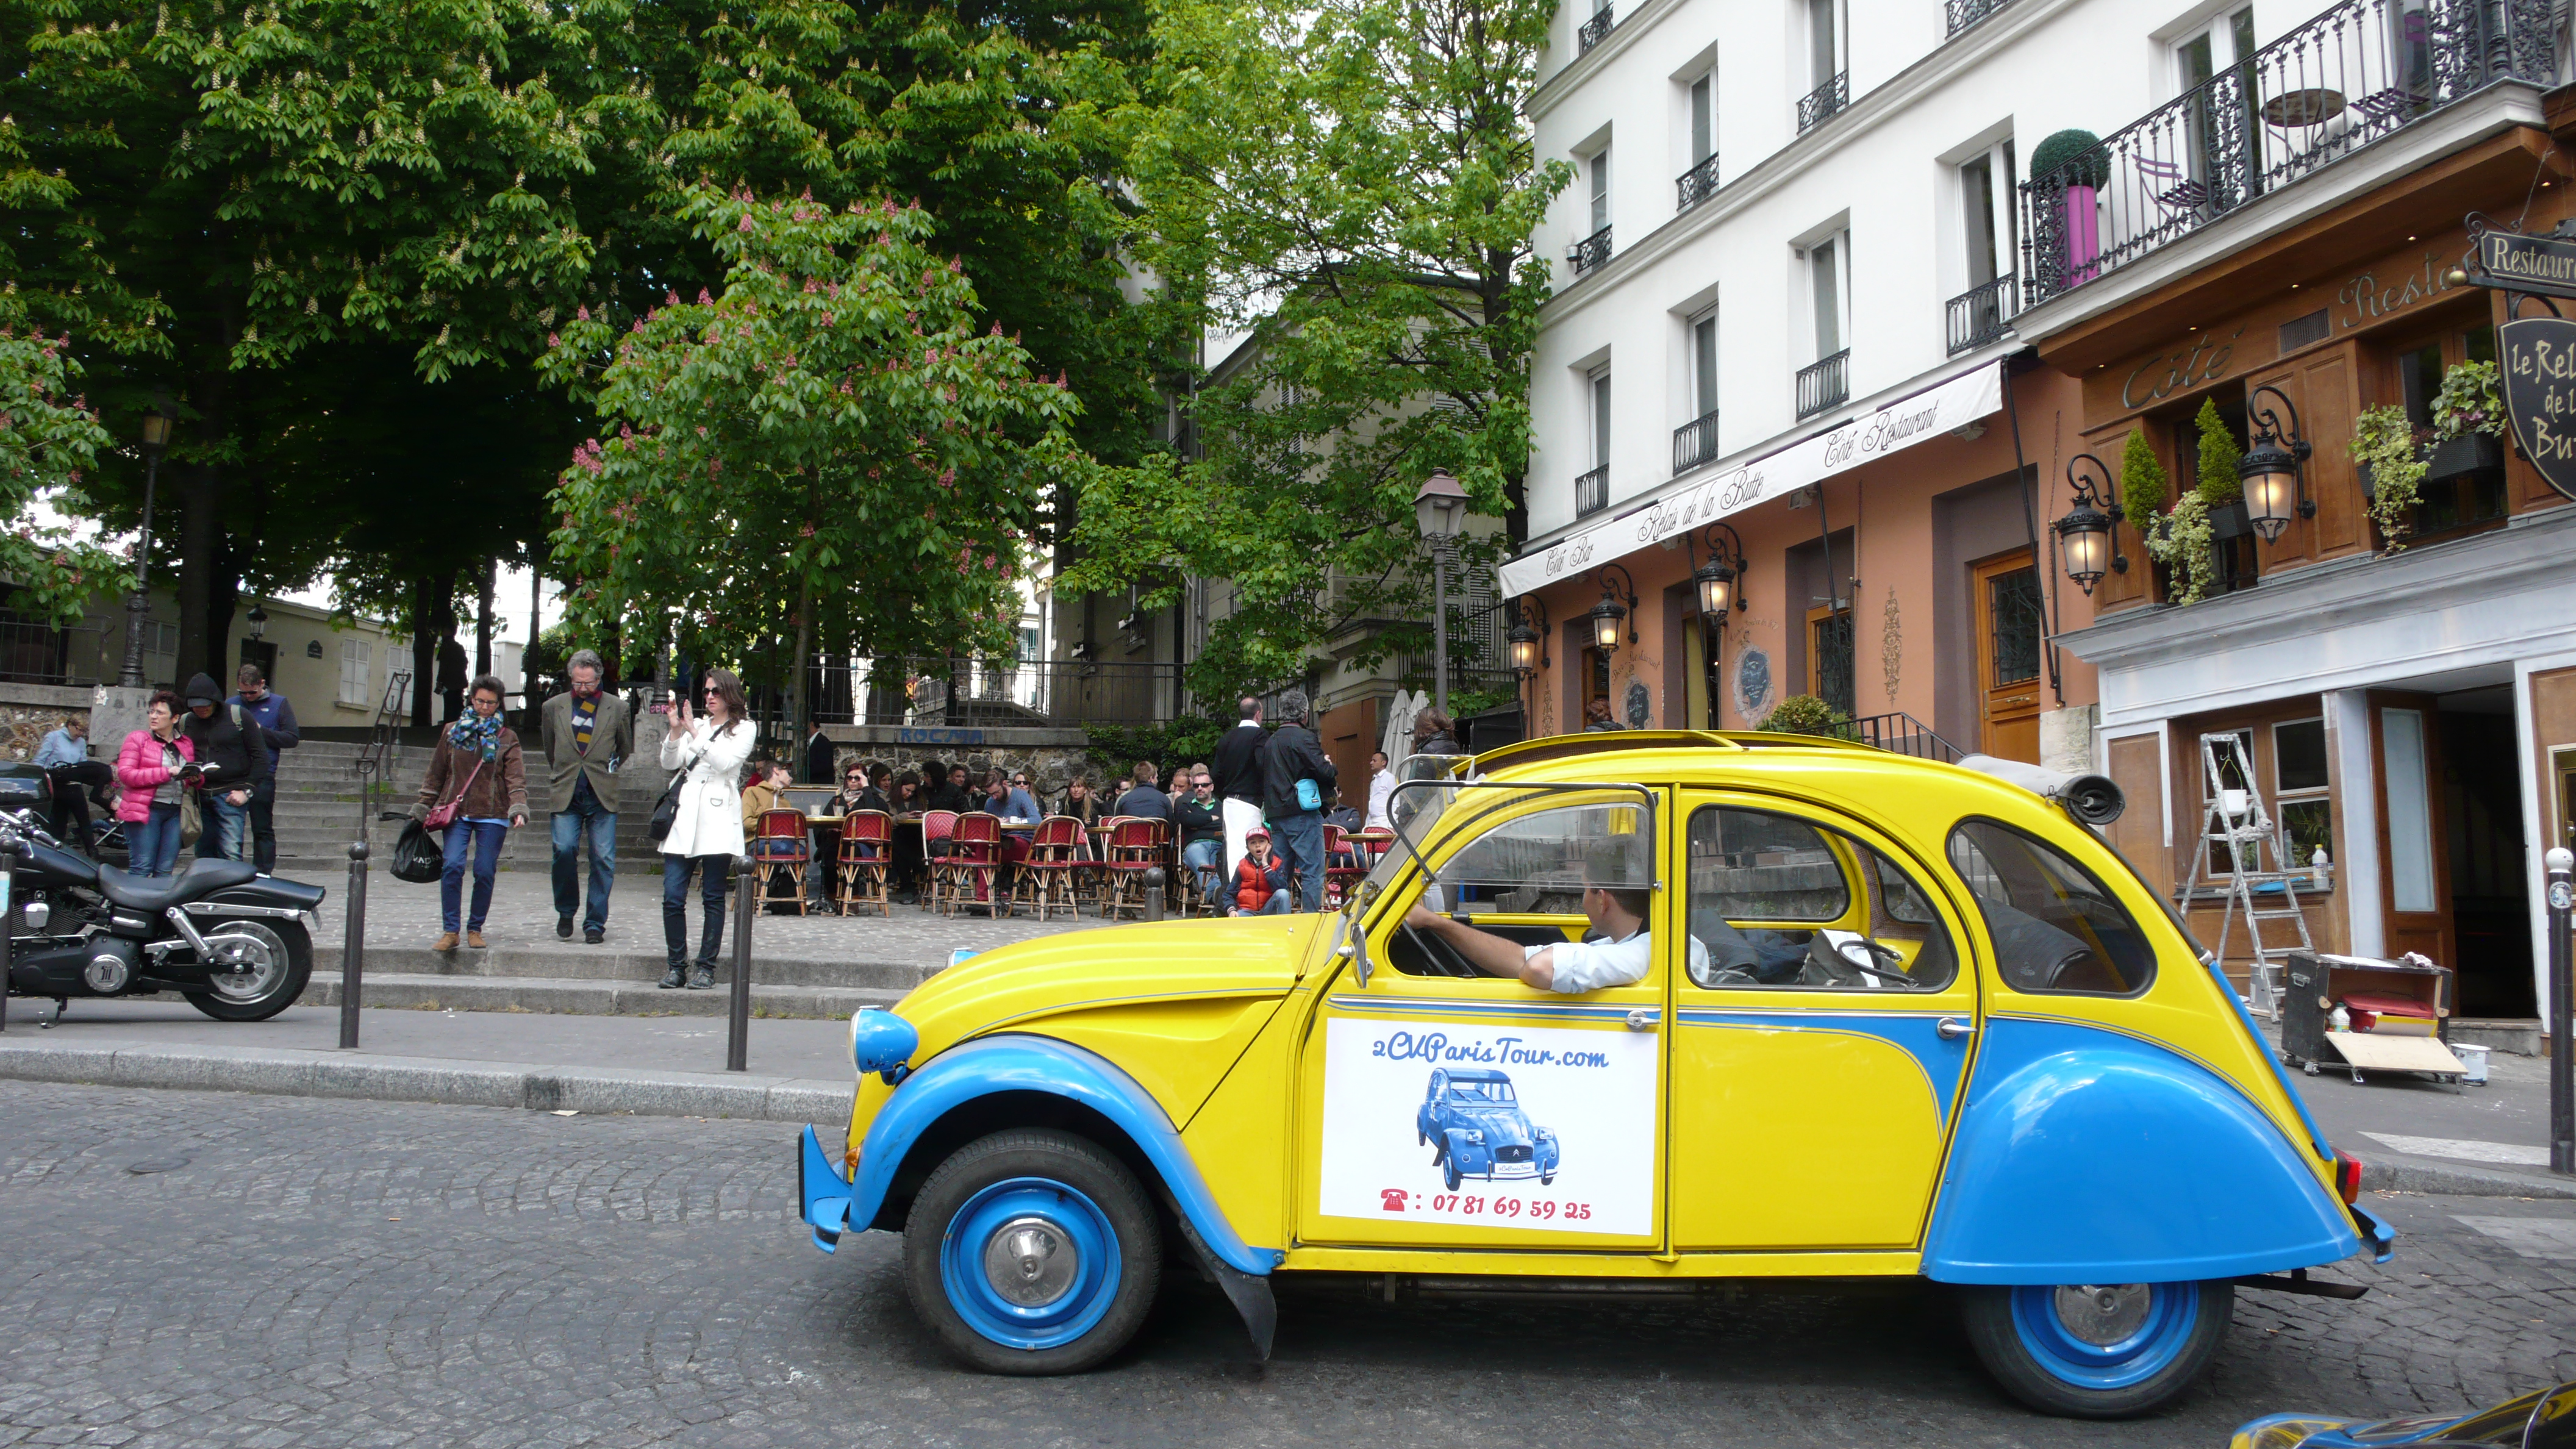 2CV Paris Tour - Visit Paris by 2CV! A café in Montmartre